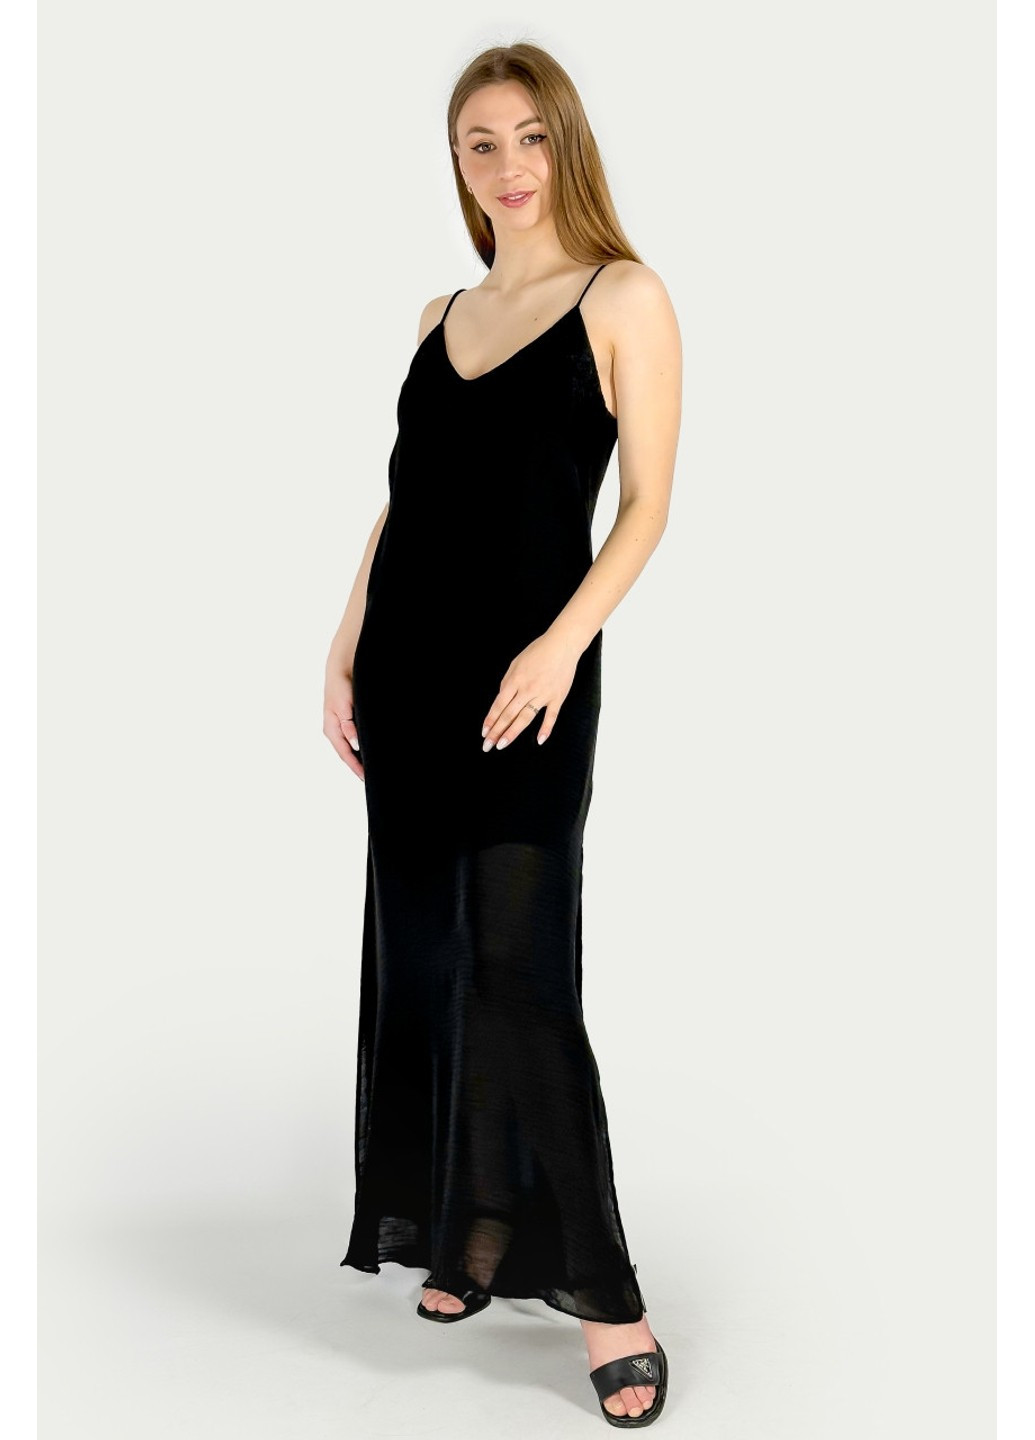 Черное вечернее платье 7700/394/800 платье-комбинация Zara однотонное